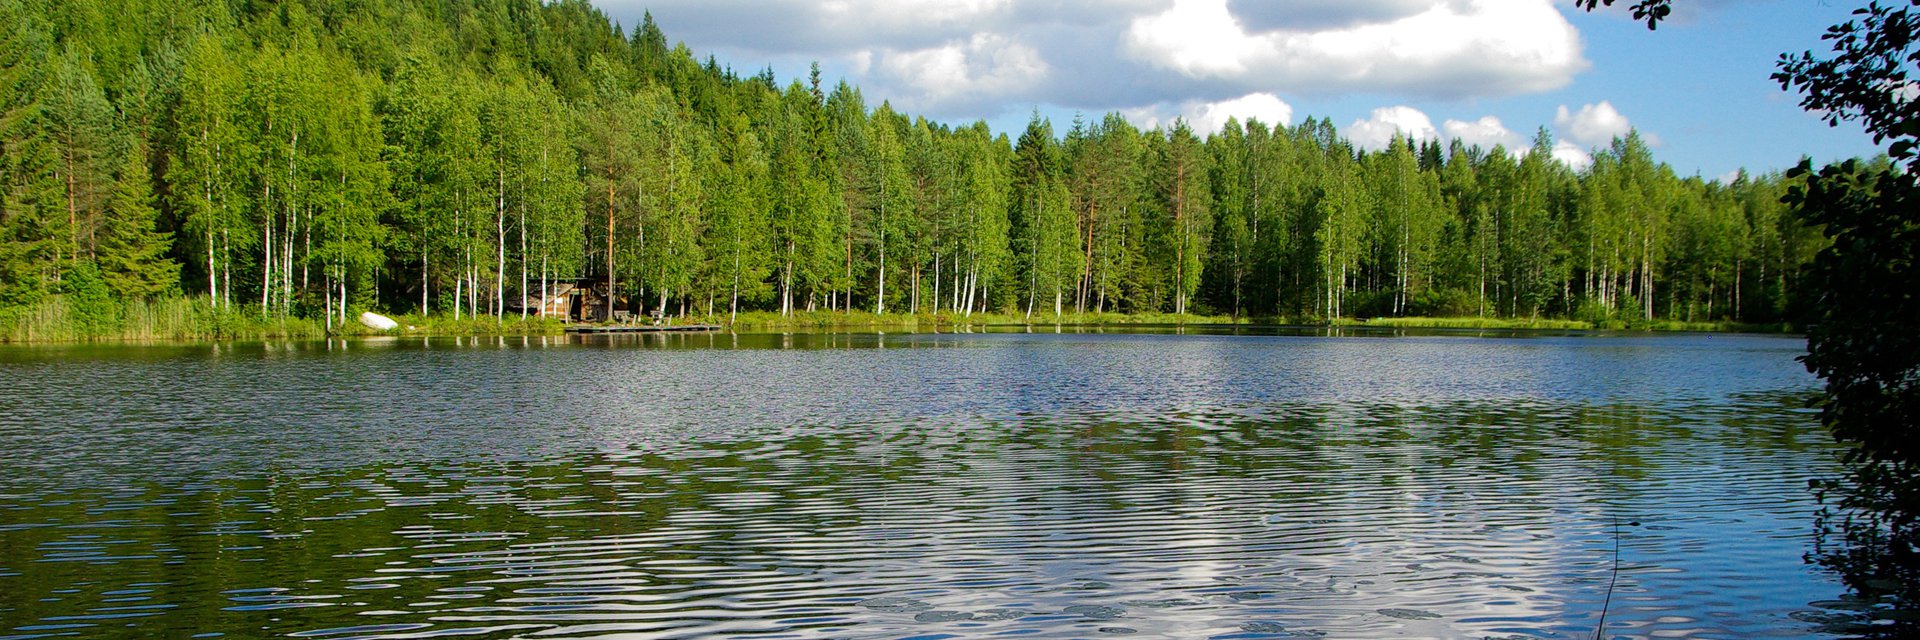 Почему Финляндию называют страной тысячи озер